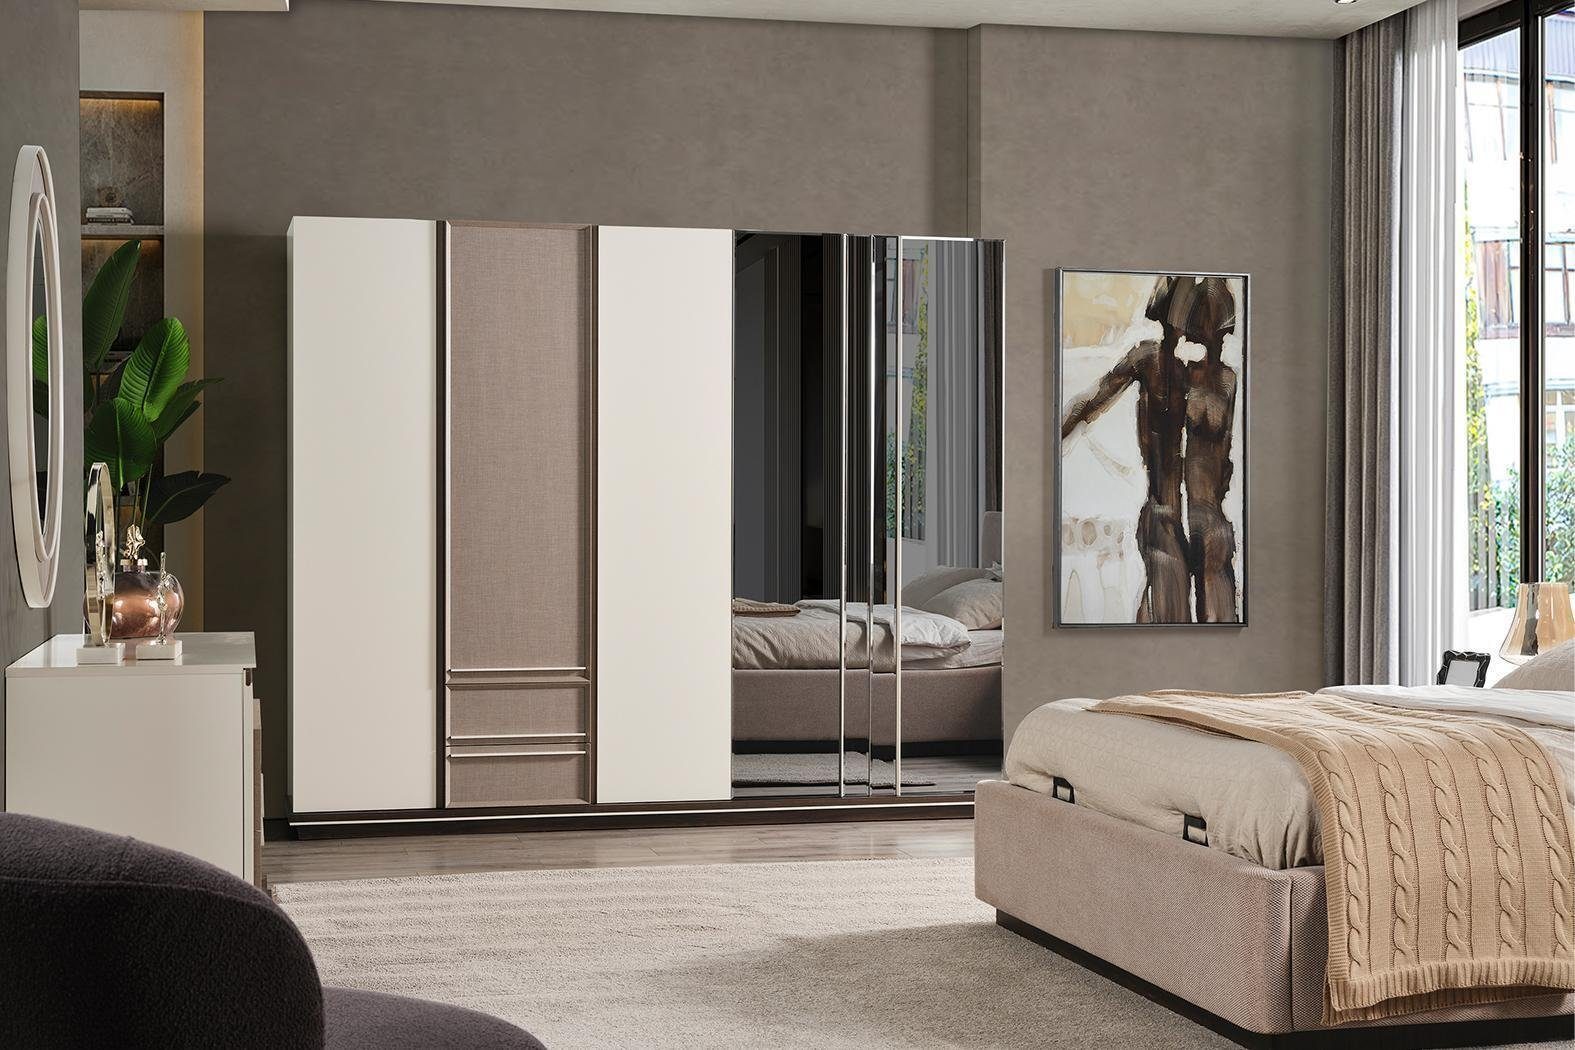 JVmoebel Schlafzimmer-Set Schlafzimmer Set Schminktisch Europe 6tlg Bett Made Design, 2xNachttische In neu Luxus